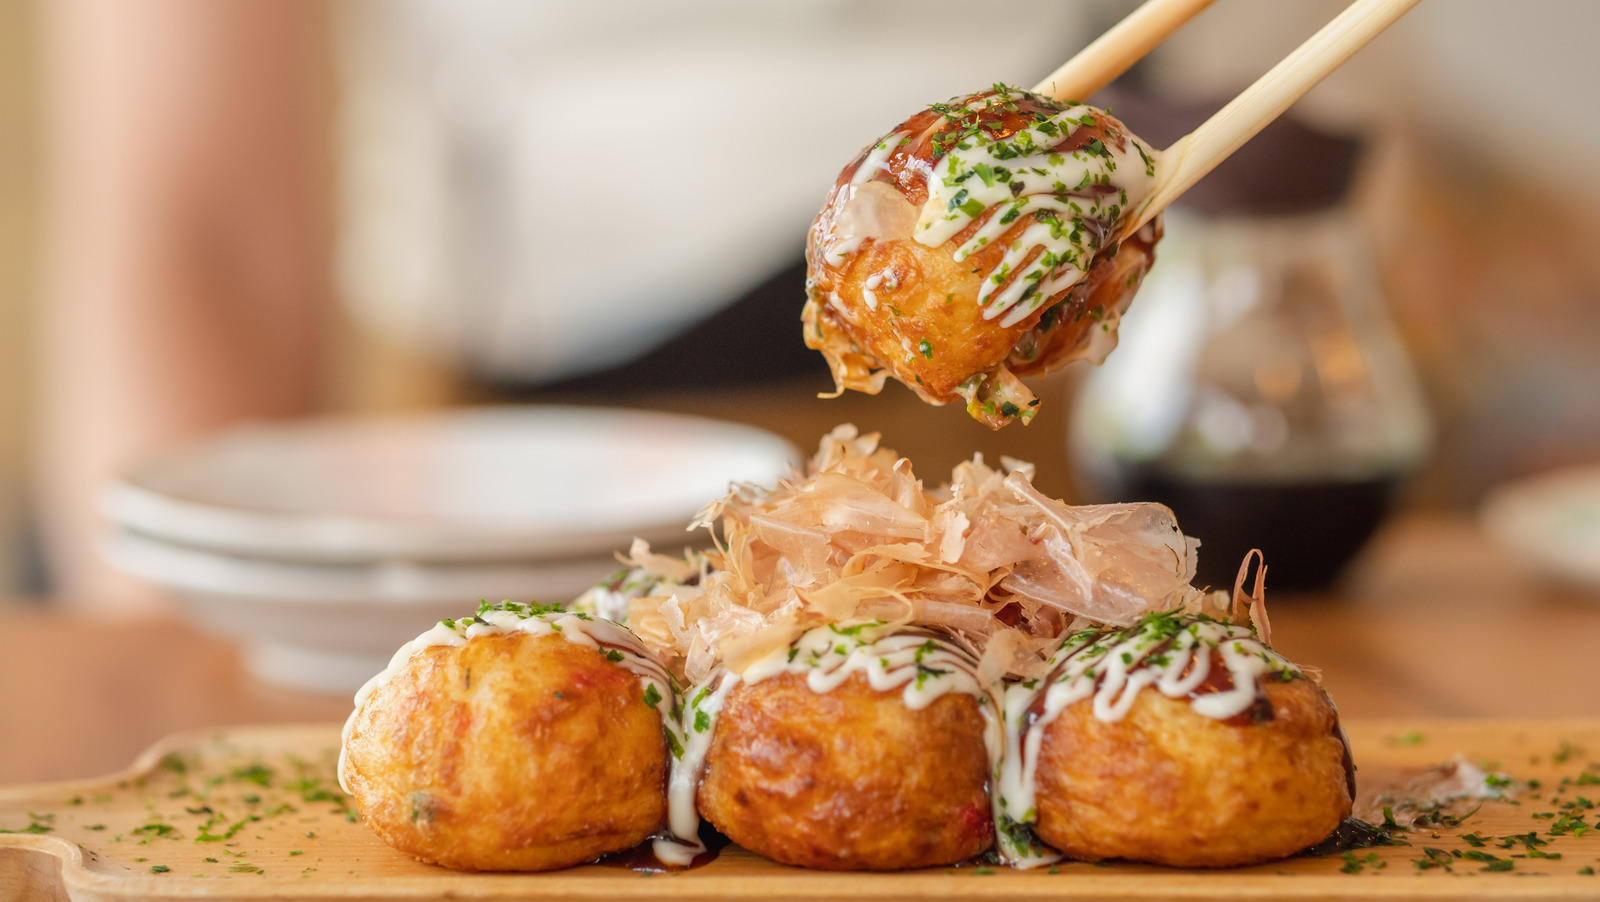 Takoyaki in Tokyo: The Iconic Japanese Street Food